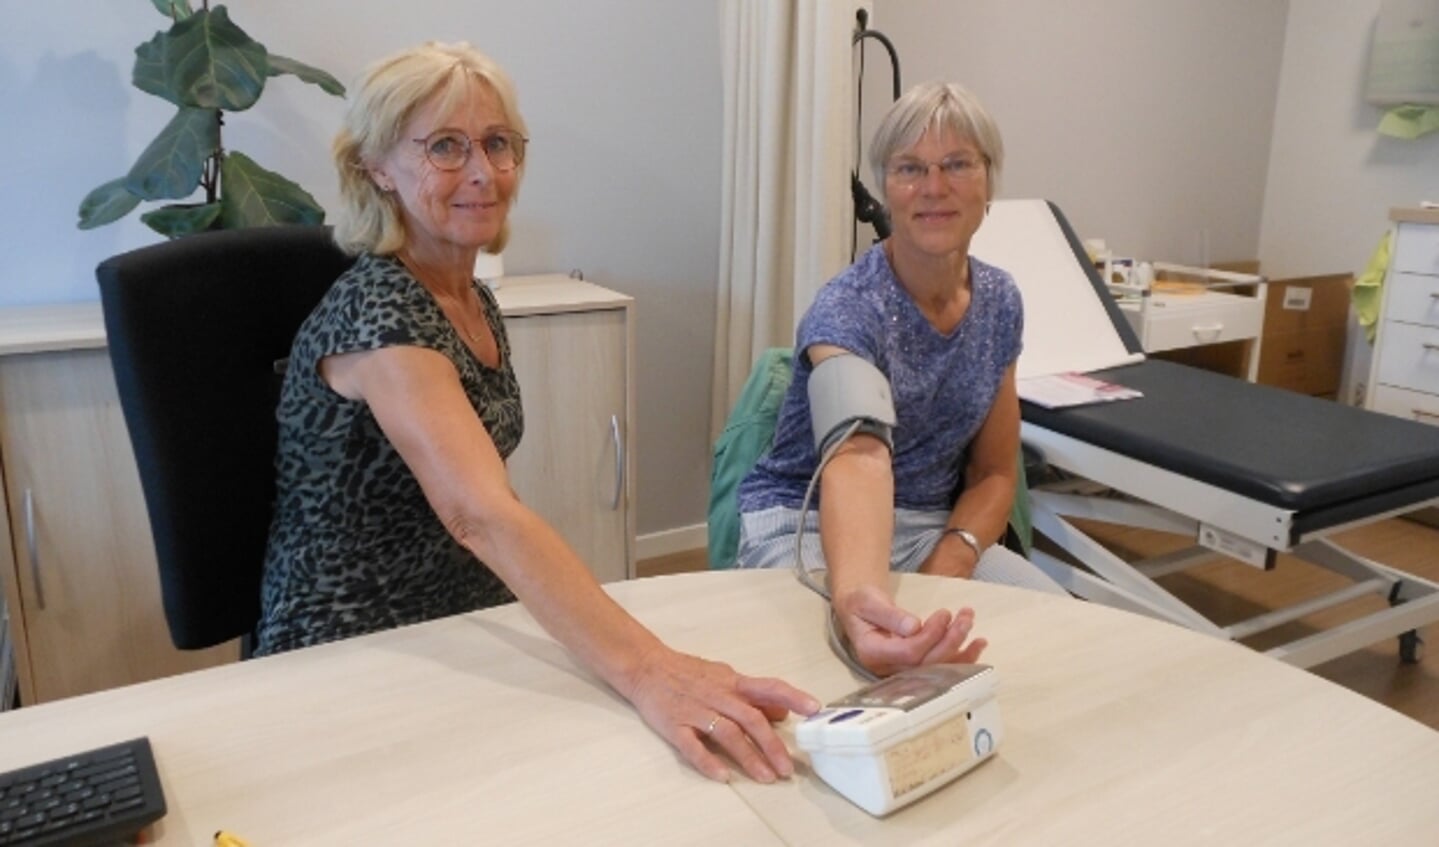 Praktijkondersteuner Lucia Veldkamp (links) en dokter Heijdra in de praktijk aan de Vackenordestraat in Elburg. Na 40 jaar gaat Lucia Veldkamp met pensioen.